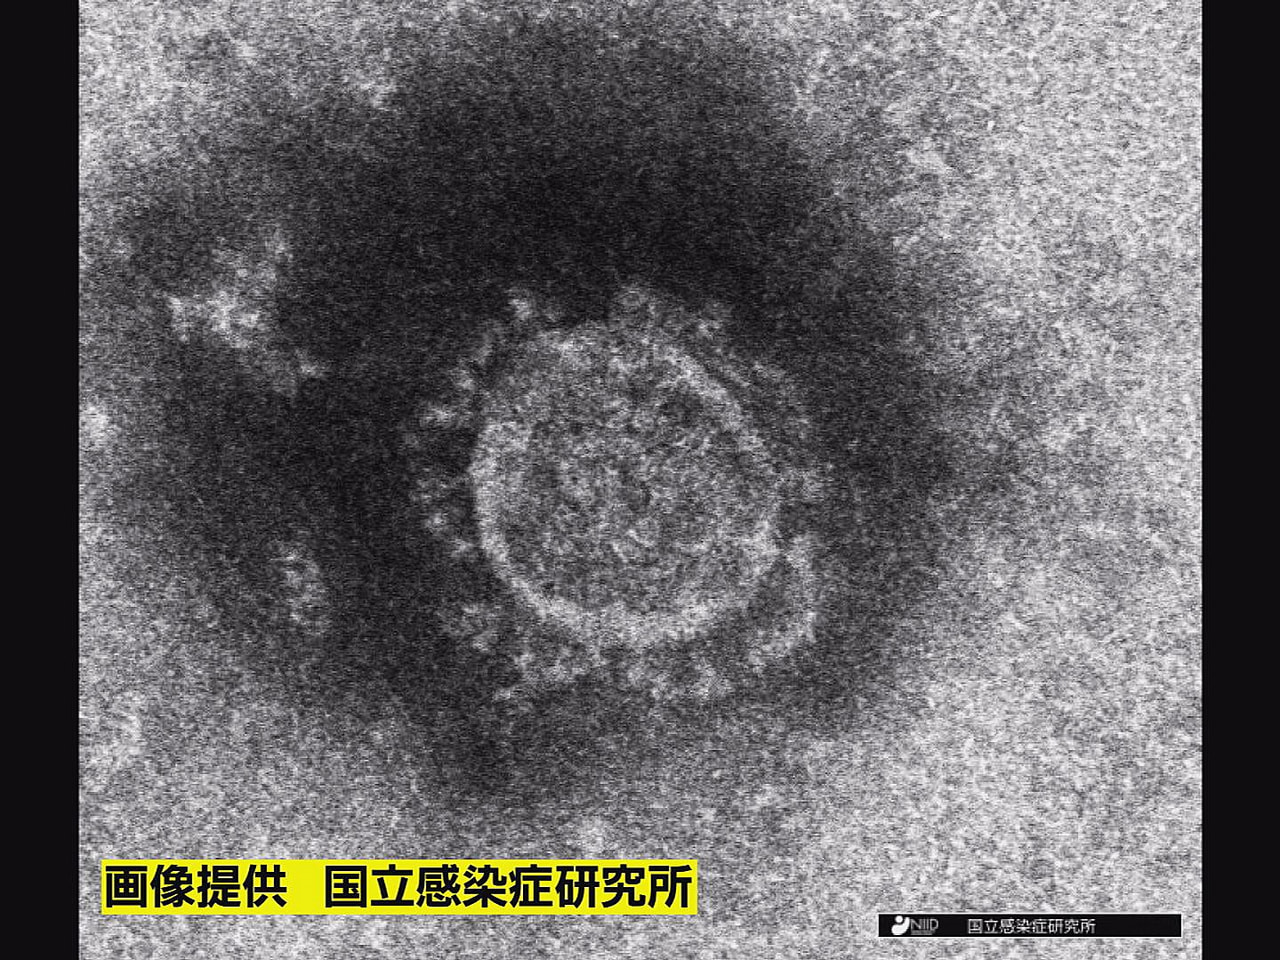 岐阜県は３１日、新型コロナウイルスの感染が新たに１人確認されたと発表しました。 ...